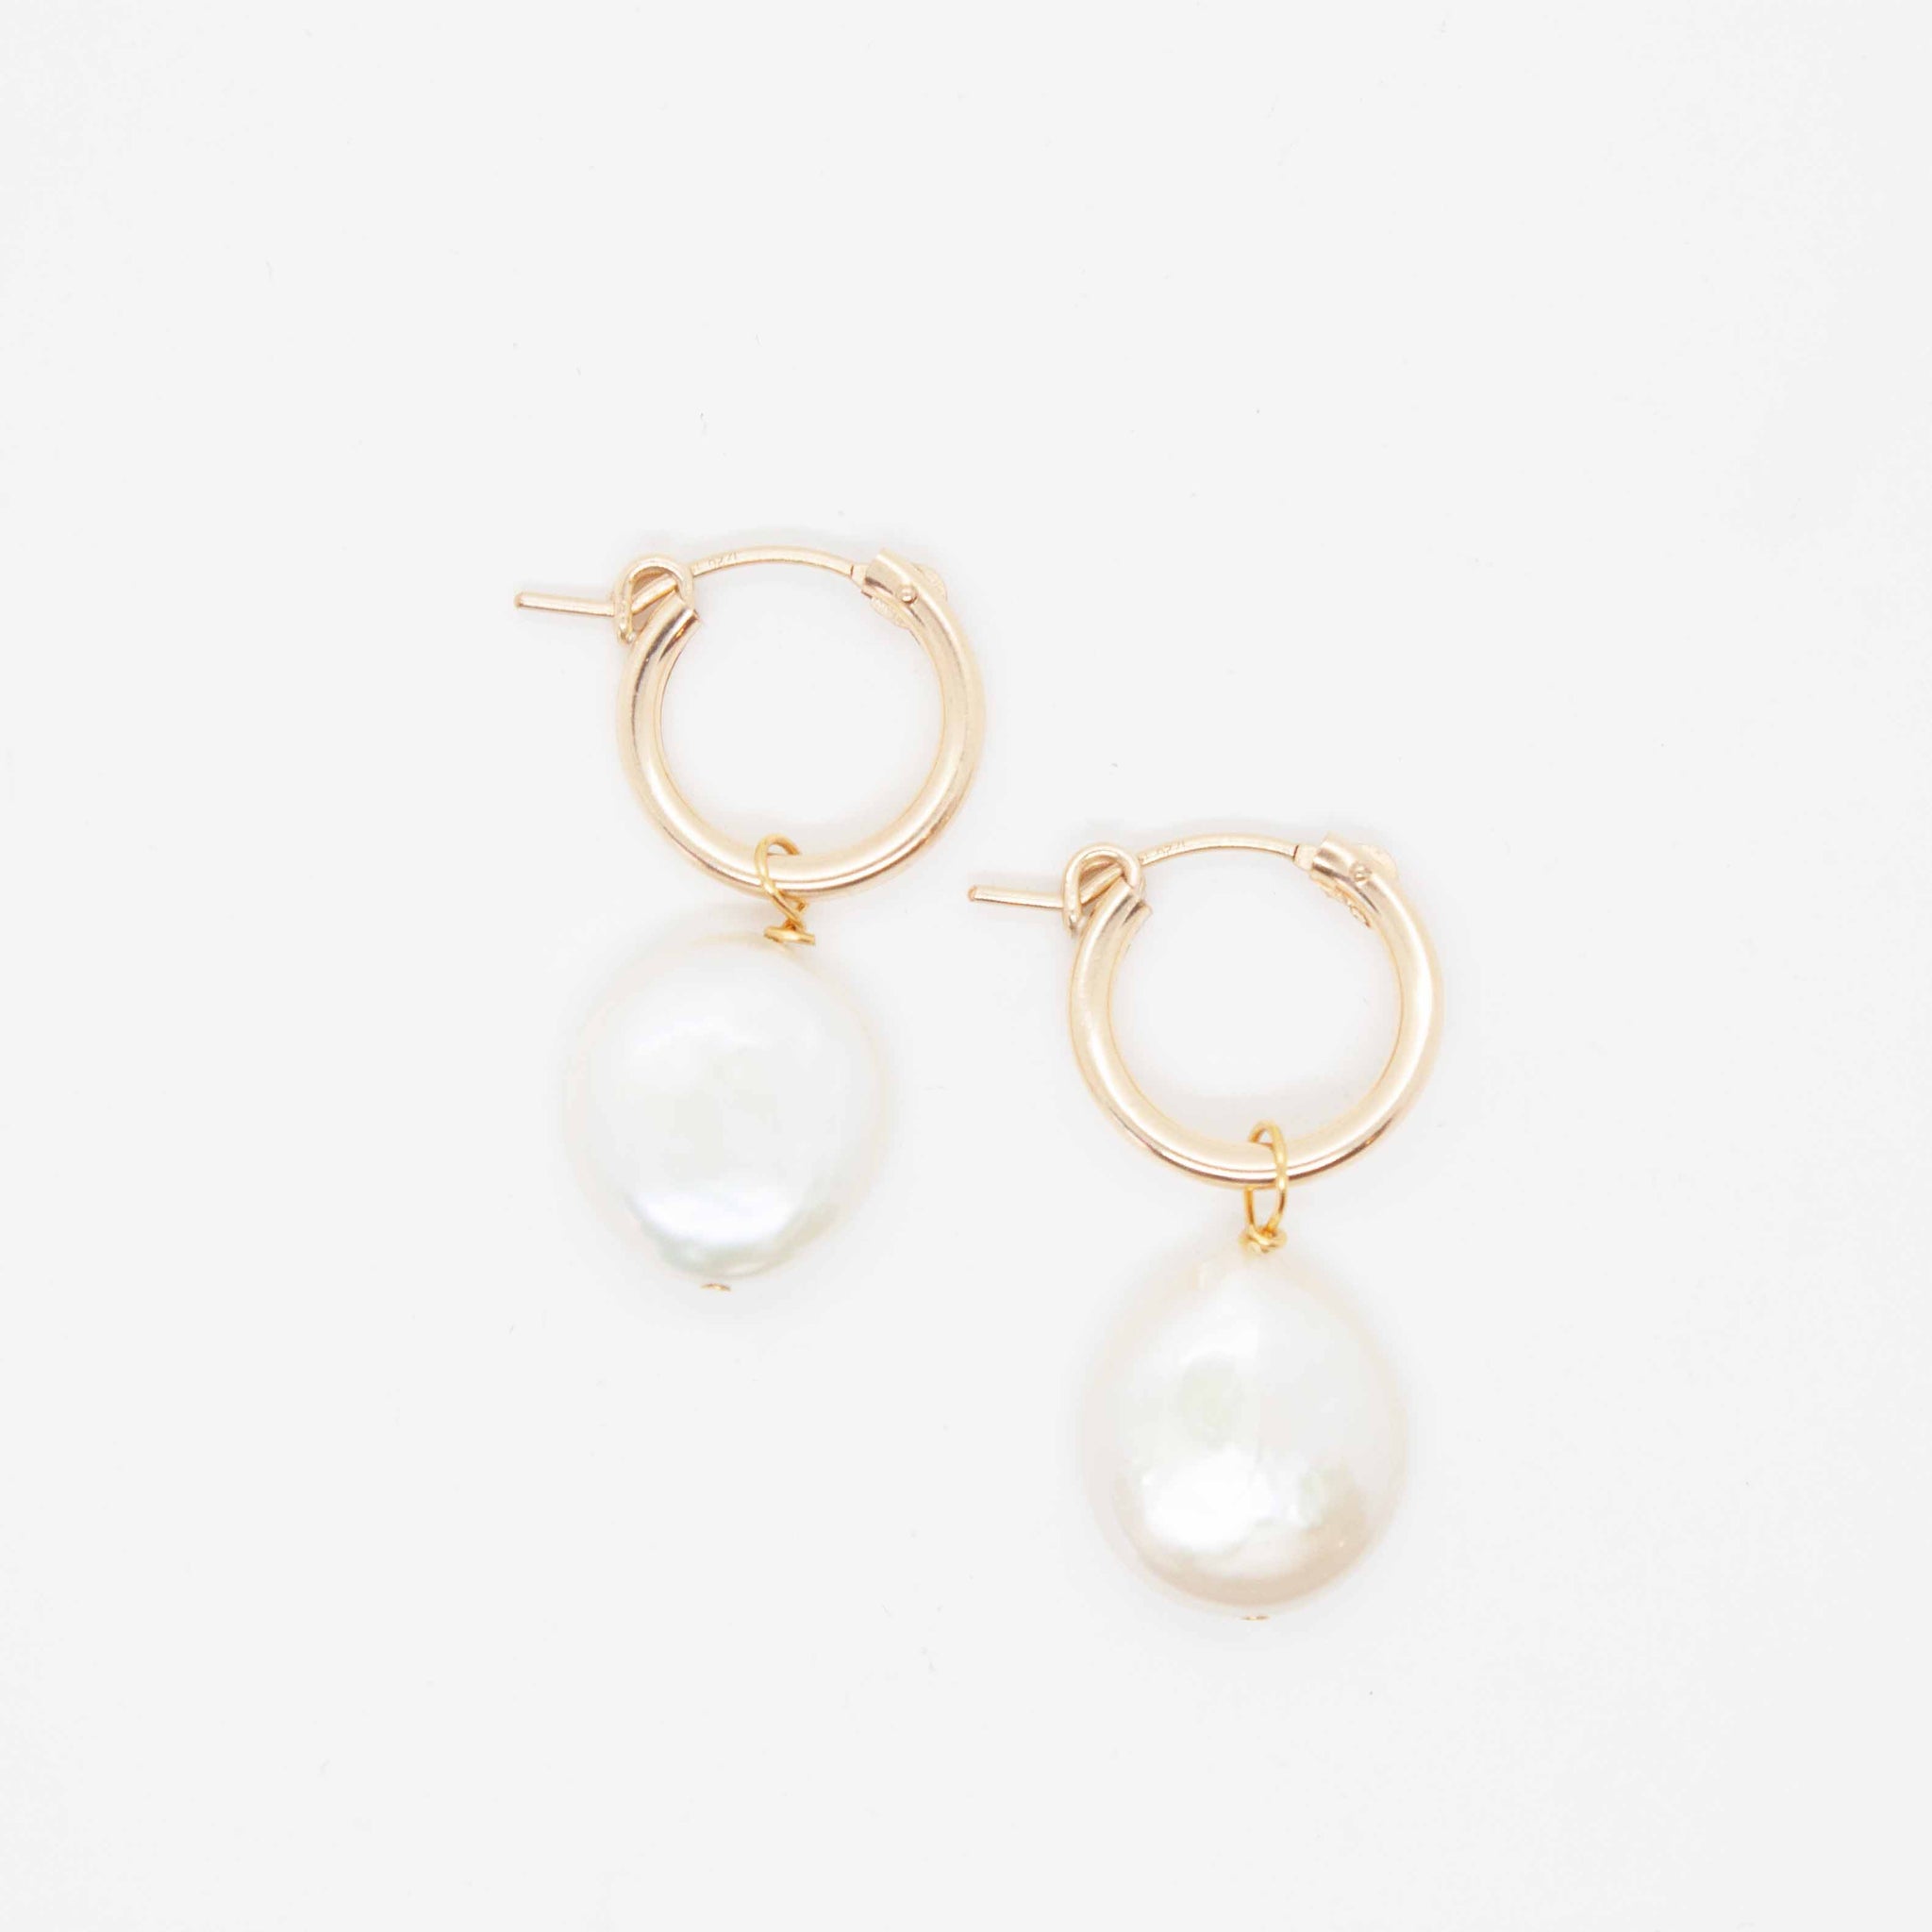 15mm gold-filled hoop earrings with keshi pearls.